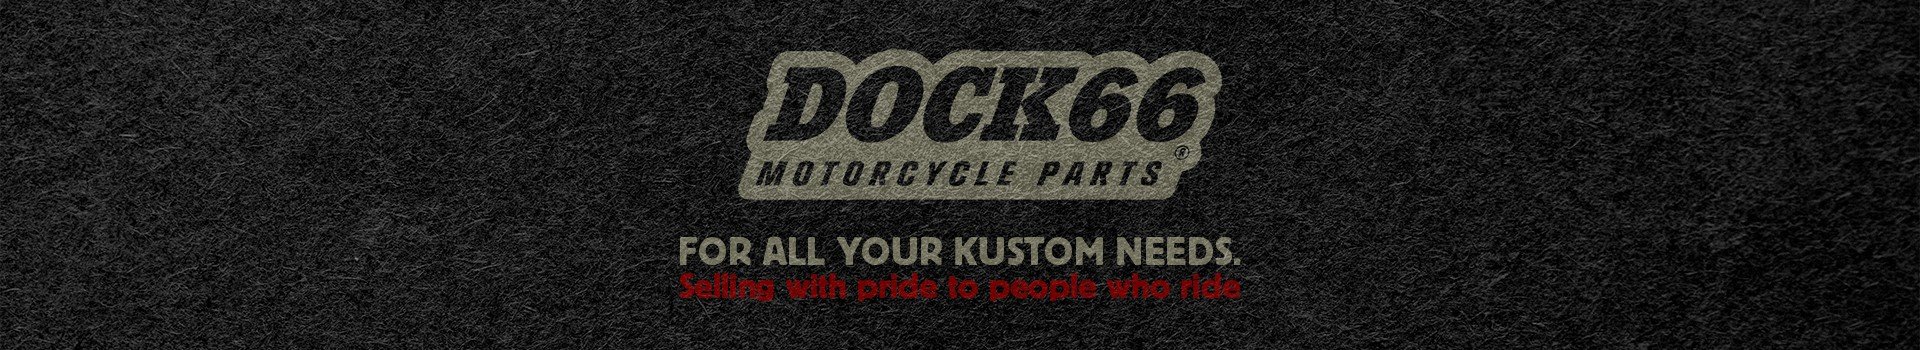 Farblich veränderte DOCK66 Motorradteile Artikelverpackung